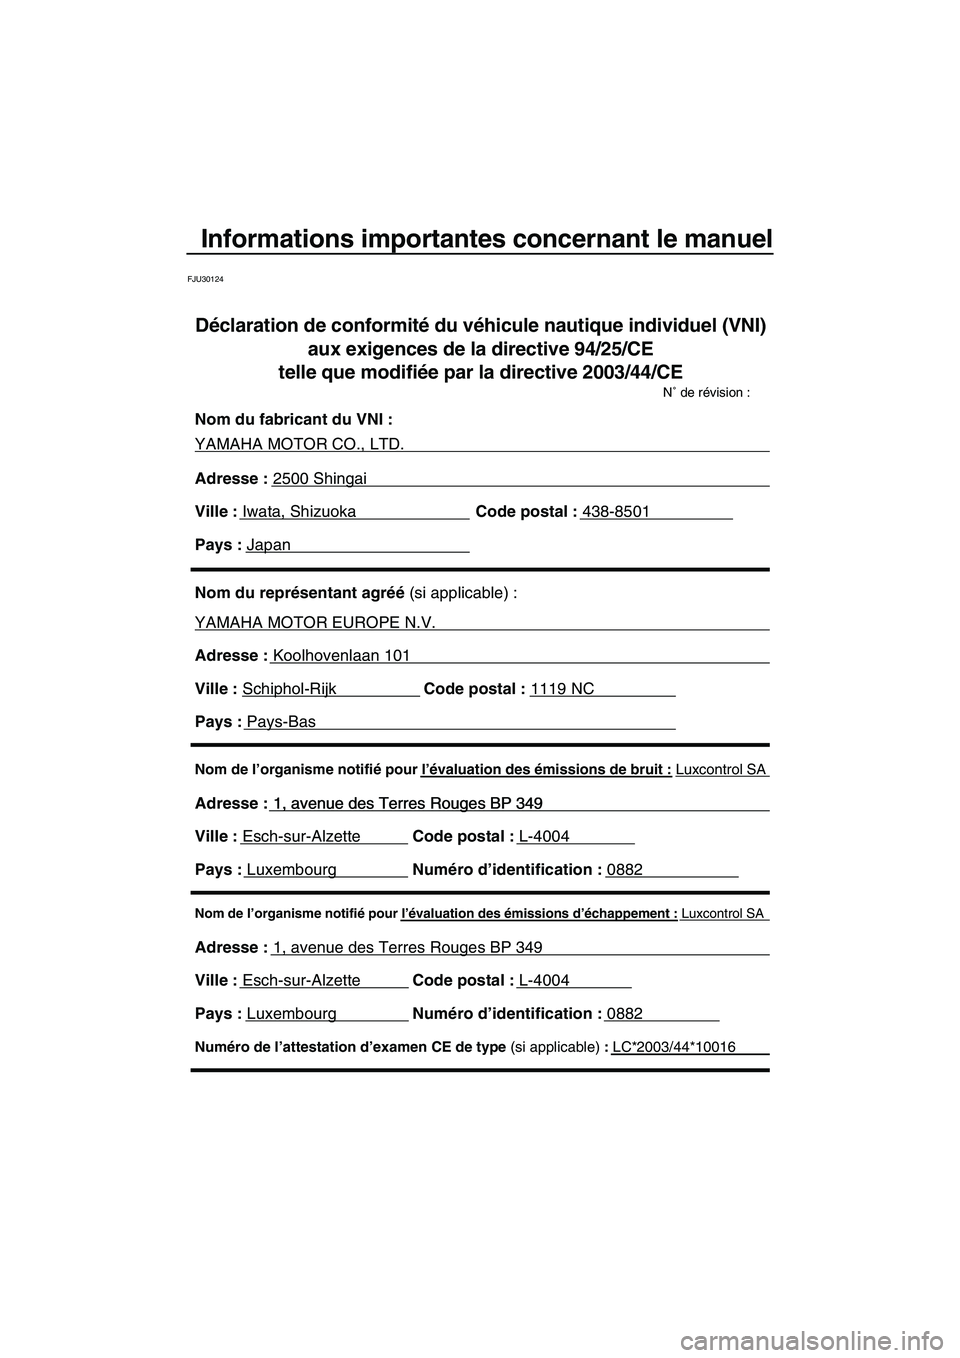 YAMAHA VX CRUISER 2010  Notices Demploi (in French) Informations importantes concernant le manuel
FJU30124
Nom de l’organisme notifié pour l’évaluation des émissions d’échappement : Luxcontrol SA
Adresse : 1, avenue des Terres Rouges BP 349 
